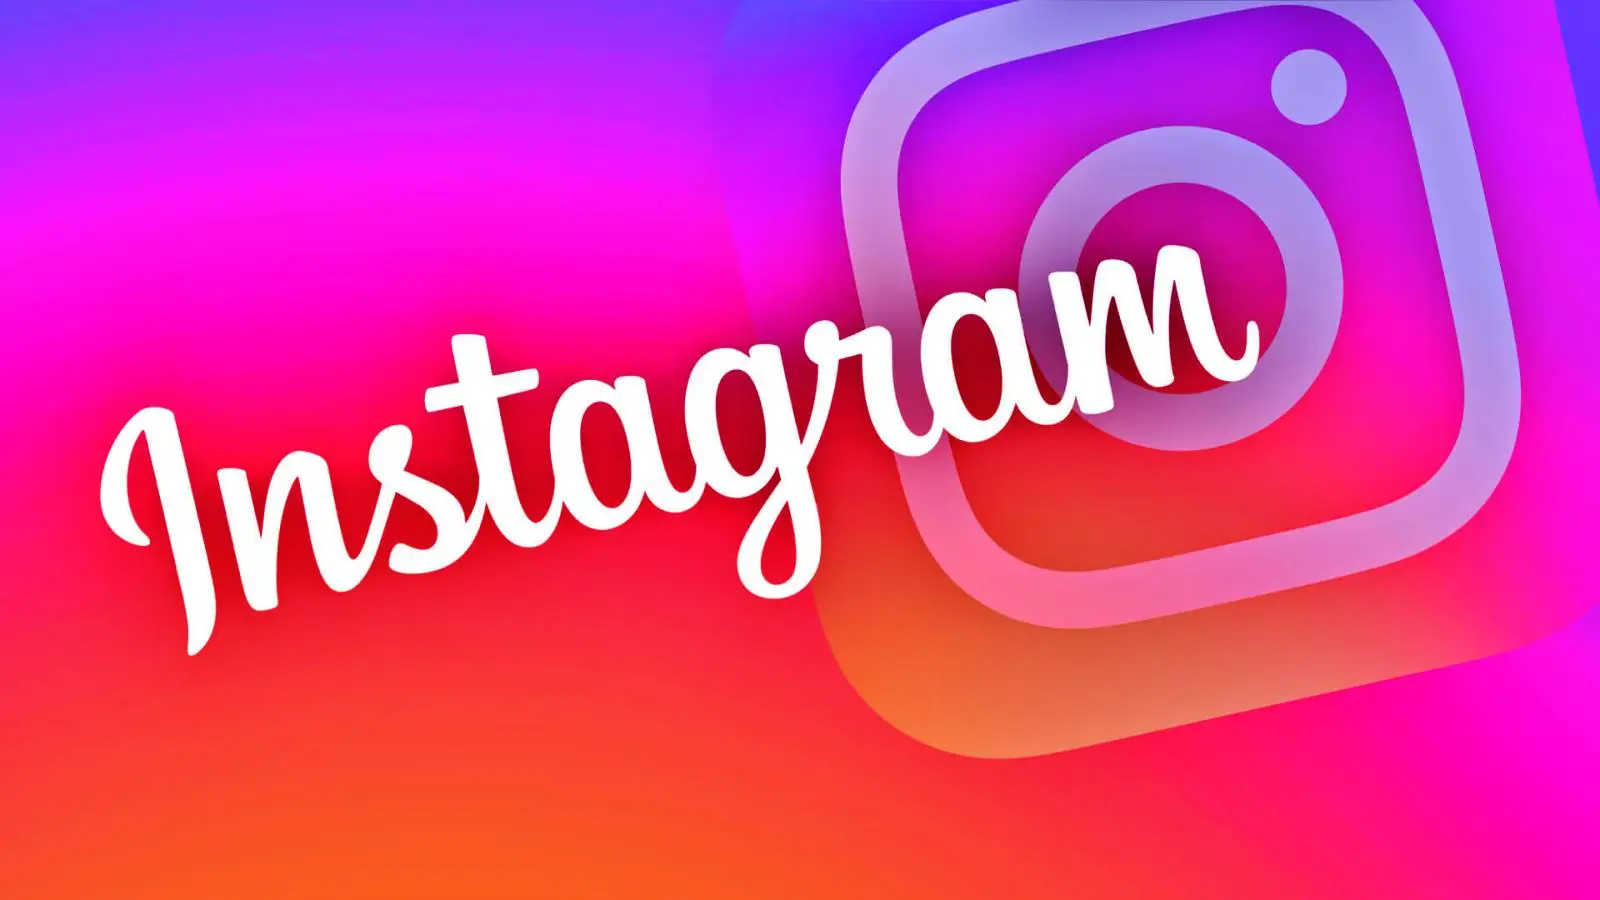 Instagram Update Aduce Noutati pentru Aplicatia Telefoanelor